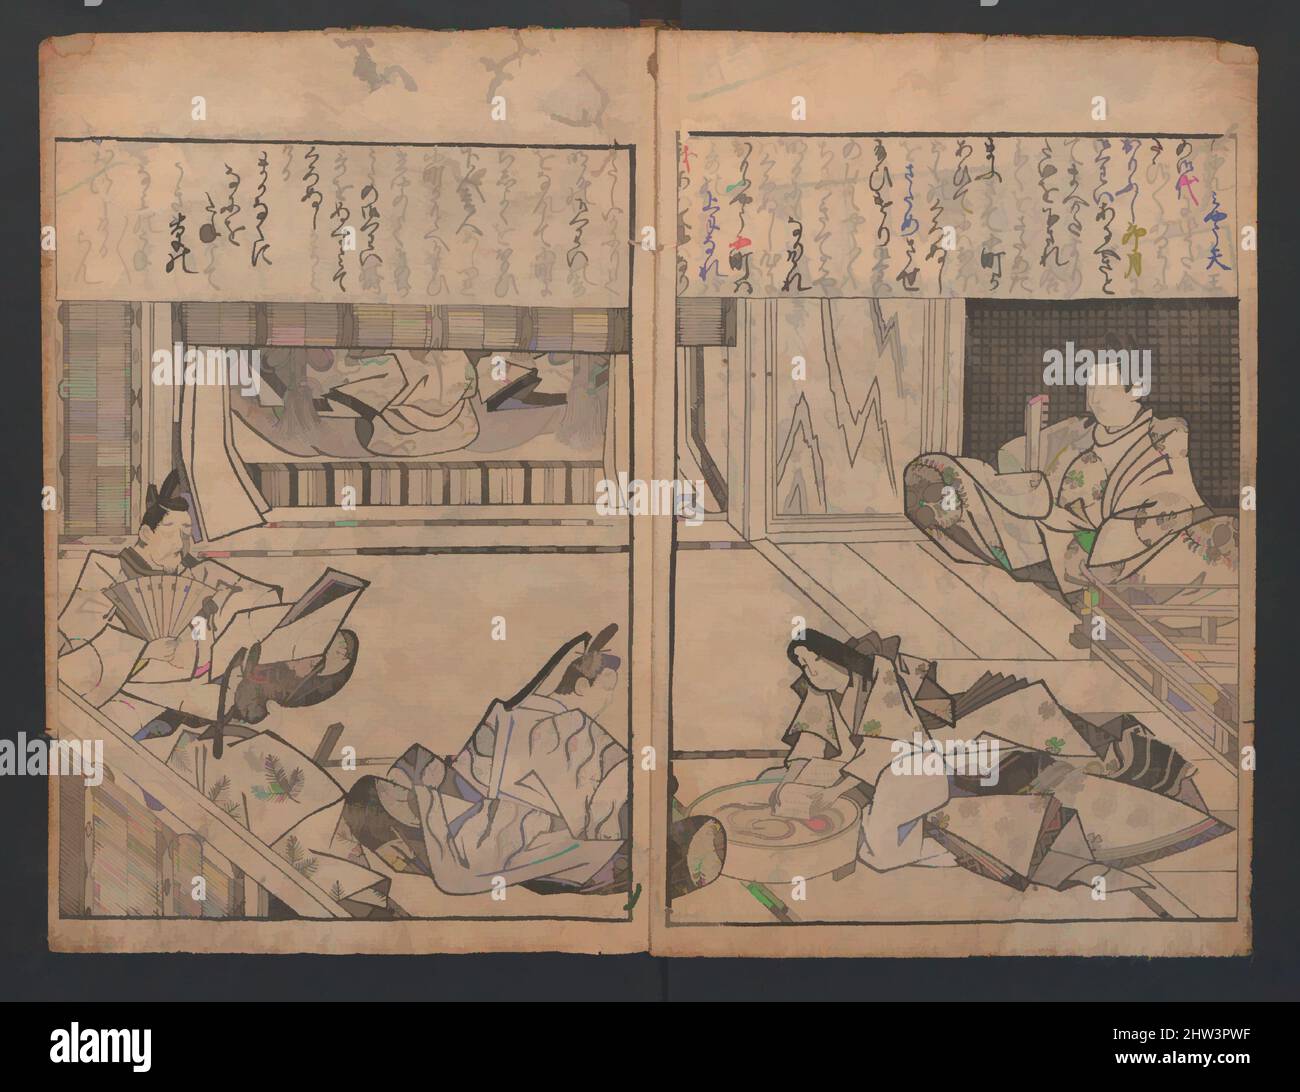 Art inspiré par 大和絵づくし, Compendium des thèmes de peinture Yamato-e (Yamato-e zukushi), période Edo (1615–1868), 1686, neuvième mois, Japon, Livre imprimé en bois; encre sur papier, 10 3/4 x 7 3/8 po. (27,3 x 18,7 cm), Livres illustrés, Hishikawa Moronobu (japonais, mort en 1694, oeuvres classiques modernisées par Artotop avec une touche de modernité. Formes, couleur et valeur, impact visuel accrocheur sur l'art émotions par la liberté d'œuvres d'art d'une manière contemporaine. Un message intemporel qui cherche une nouvelle direction créative. Artistes qui se tournent vers le support numérique et créent le NFT Artotop Banque D'Images